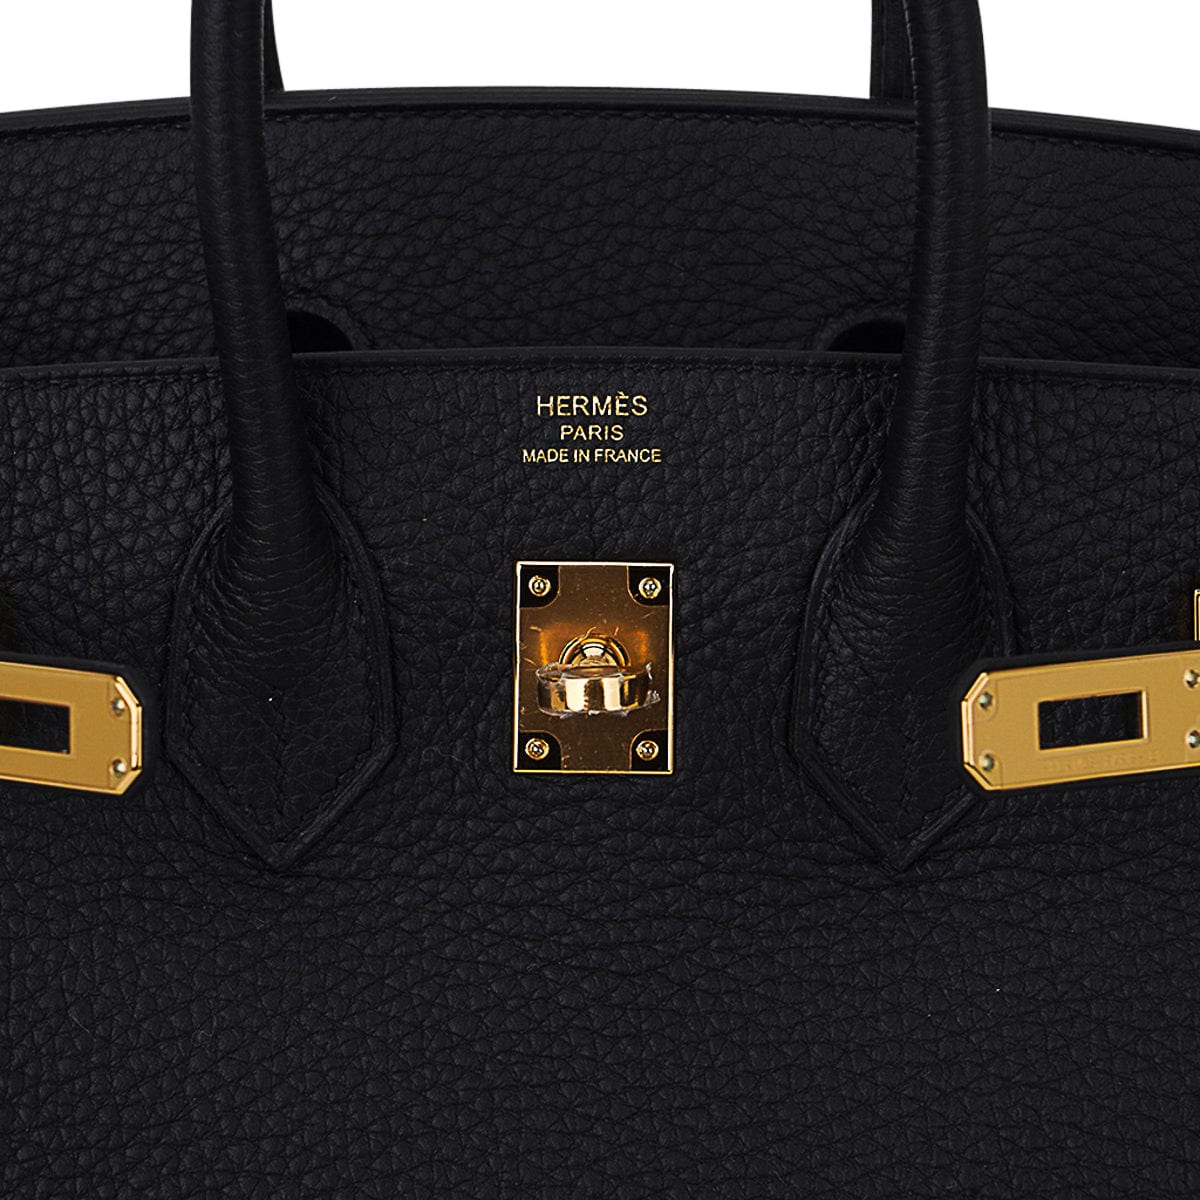 Hermes Birkin 25 Bag Black Togo Leather with Gold Hardware